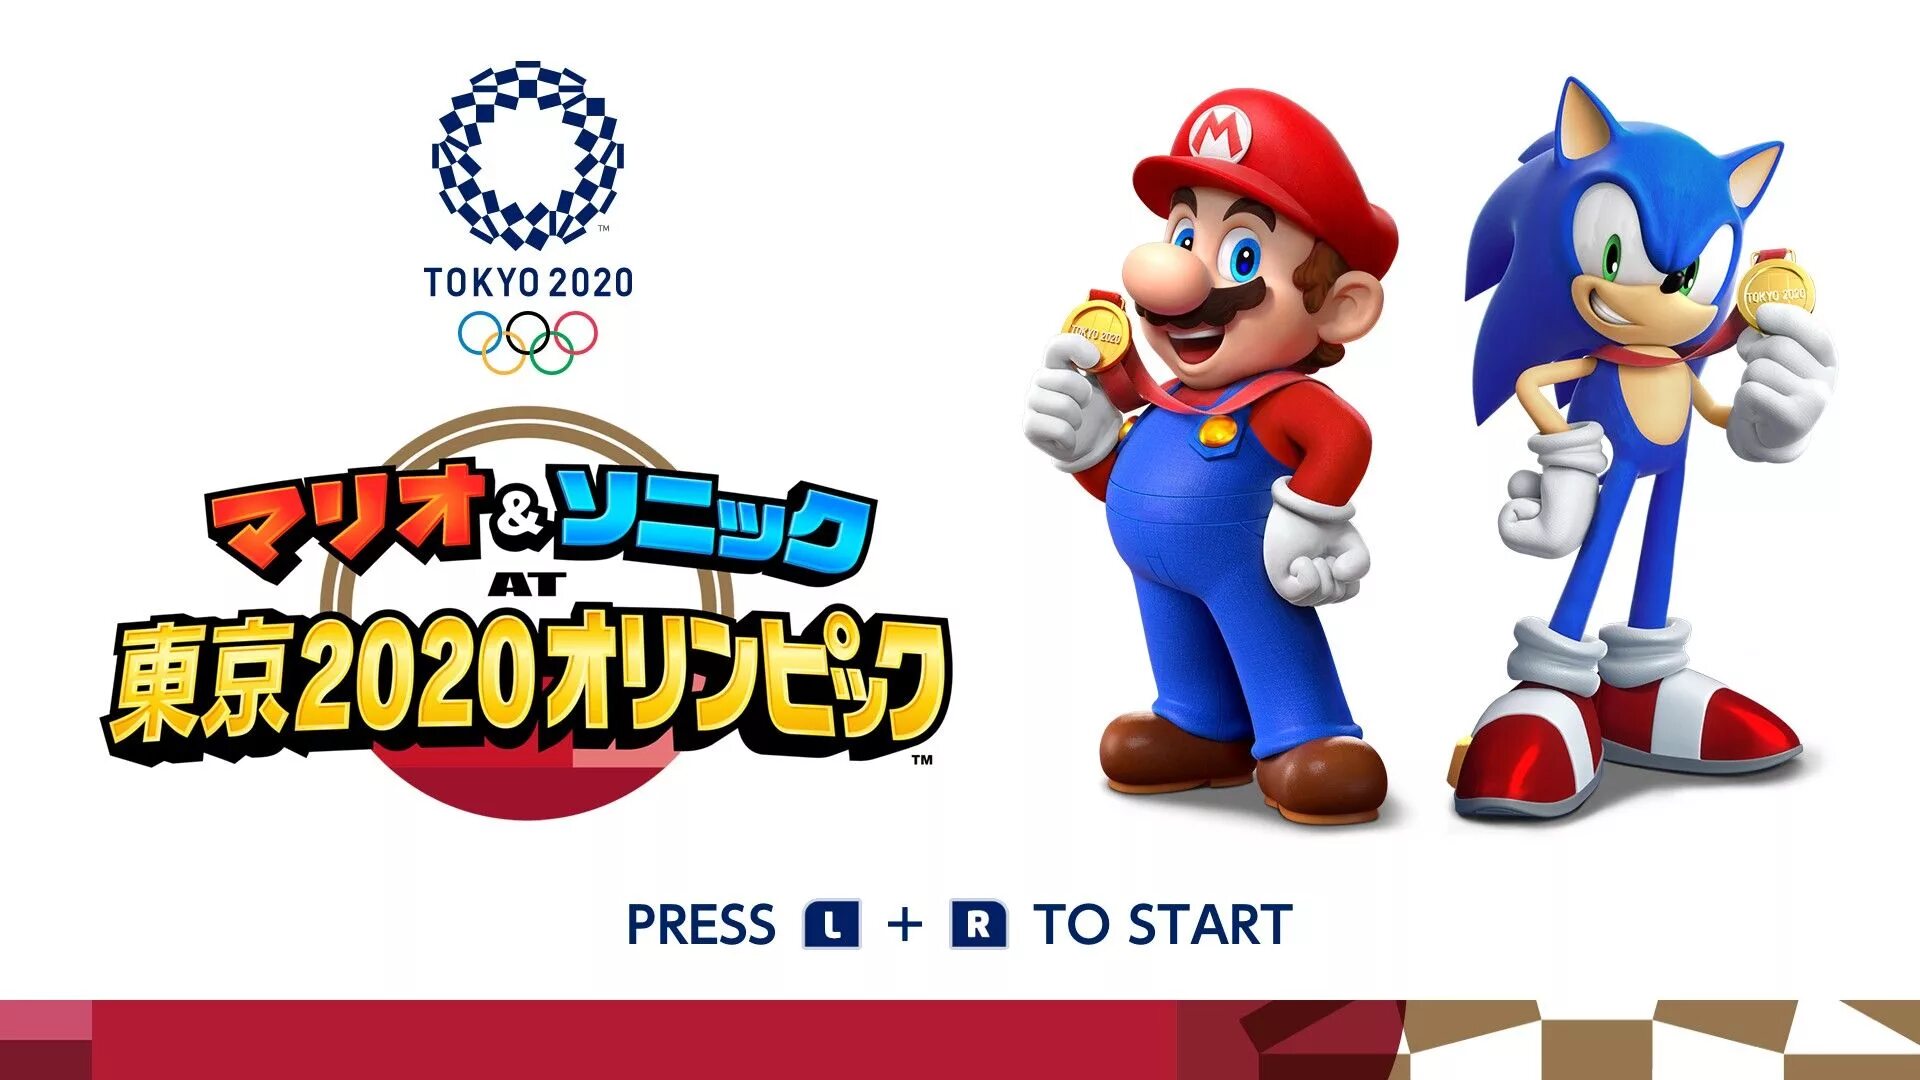 Олимпийский марио и соник. Mario and Sonic at the Olympic games Tokyo 2020. Марио и Соник на Олимпийских играх. Марио Соник 2020. Mario & Sonic at the Olympic games.